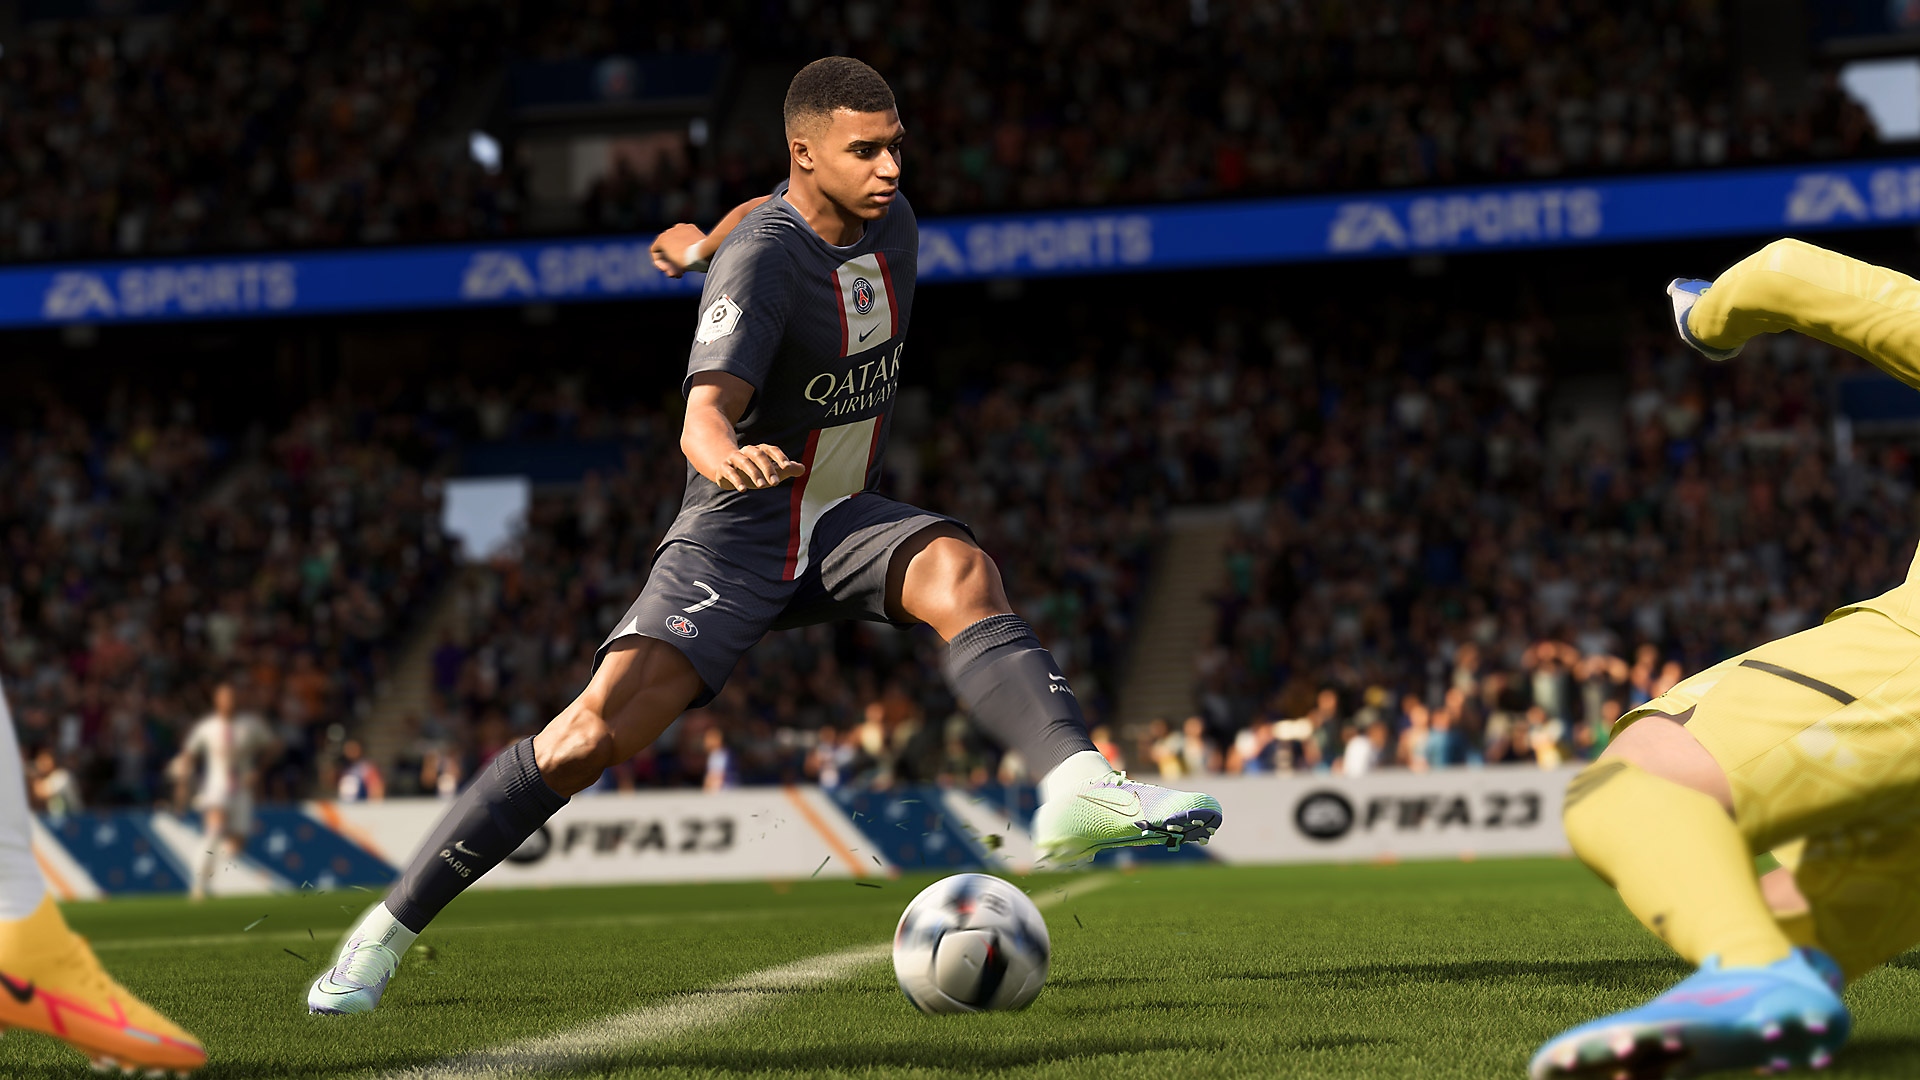 Screenshot von EA Sports FIFA 23 zeigt einen Spieler, der gleich schießen wird